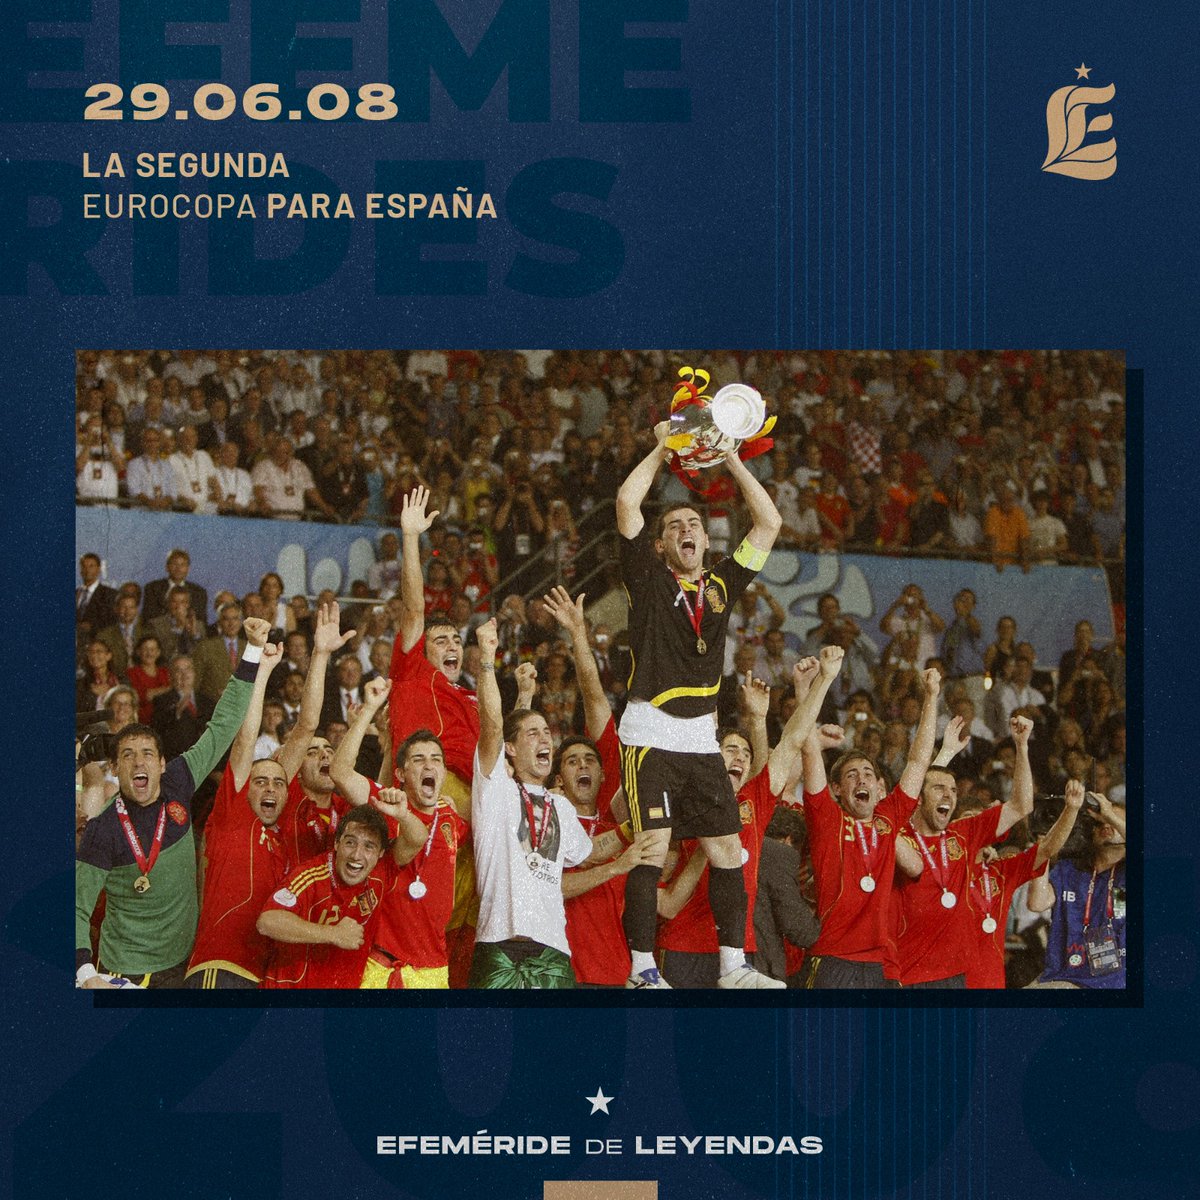 🔙🏆 En 2️⃣0️⃣0️⃣8️⃣, HOY HACE 15 años, la @SEFutbol arrancaba en Viena la época más brillante de su historia con la conquista de su segunda Eurocopa, el primer título en 44 años. #SomosEspaña 🇪🇸